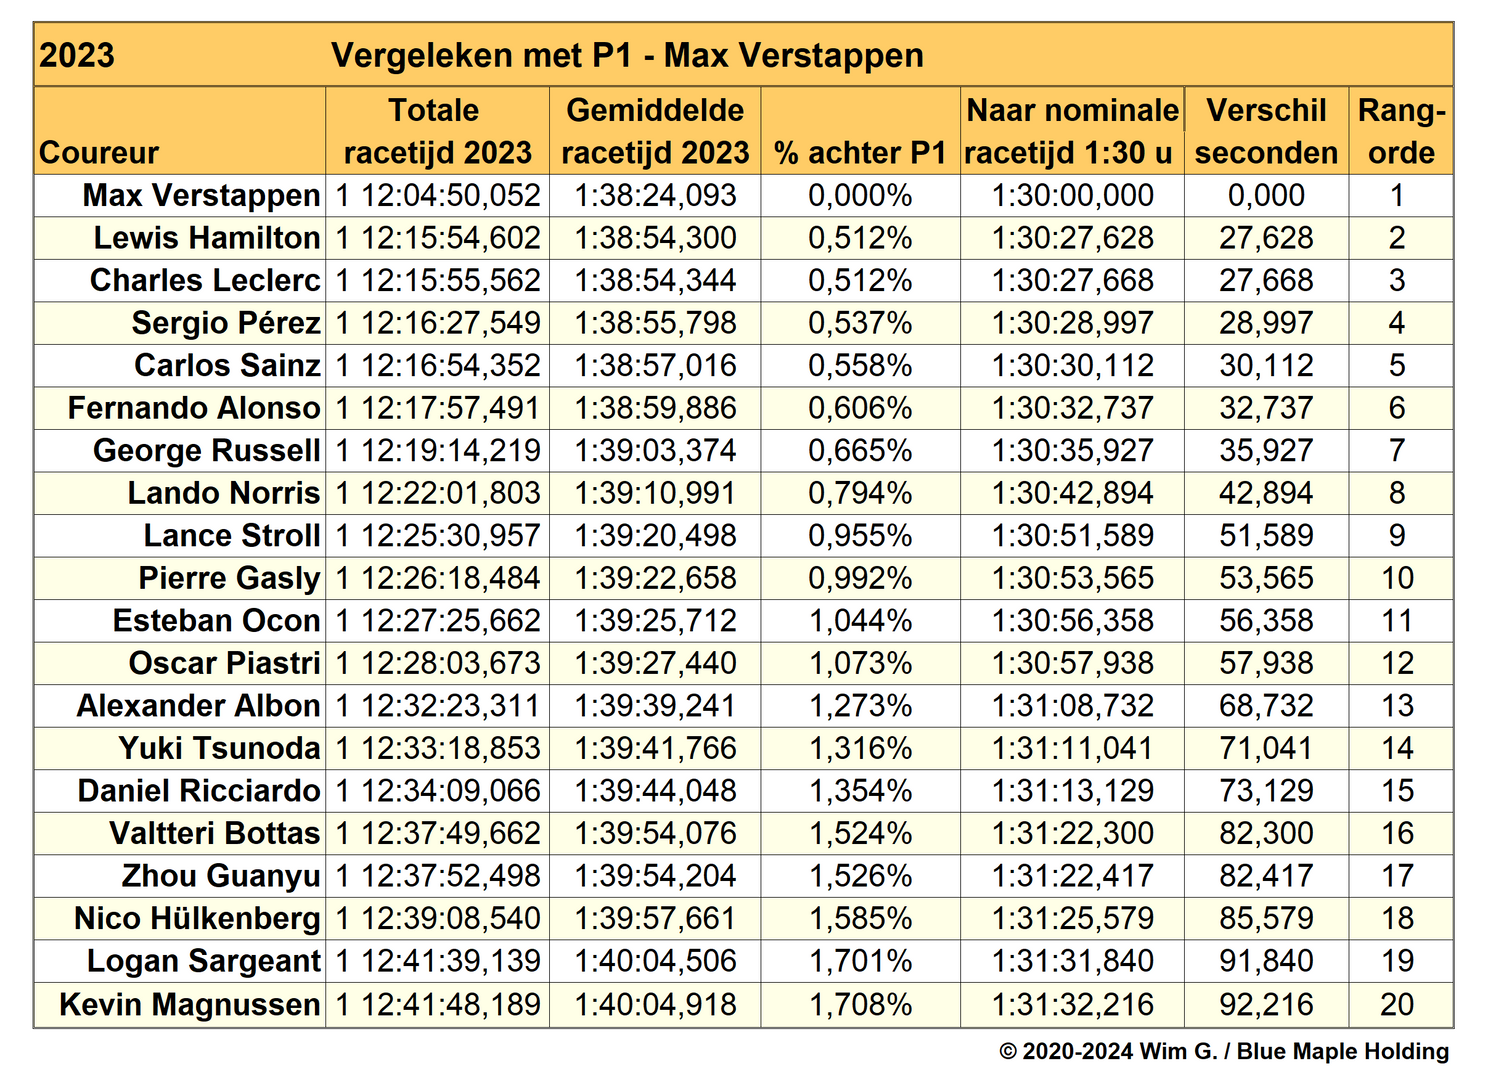 Tabel 1. Positionering van de coureurs voor 2023, gebaseerd op statistisch genormaliseerde cijfers, met tijden voor Max Verstappen op P1 als referentie.